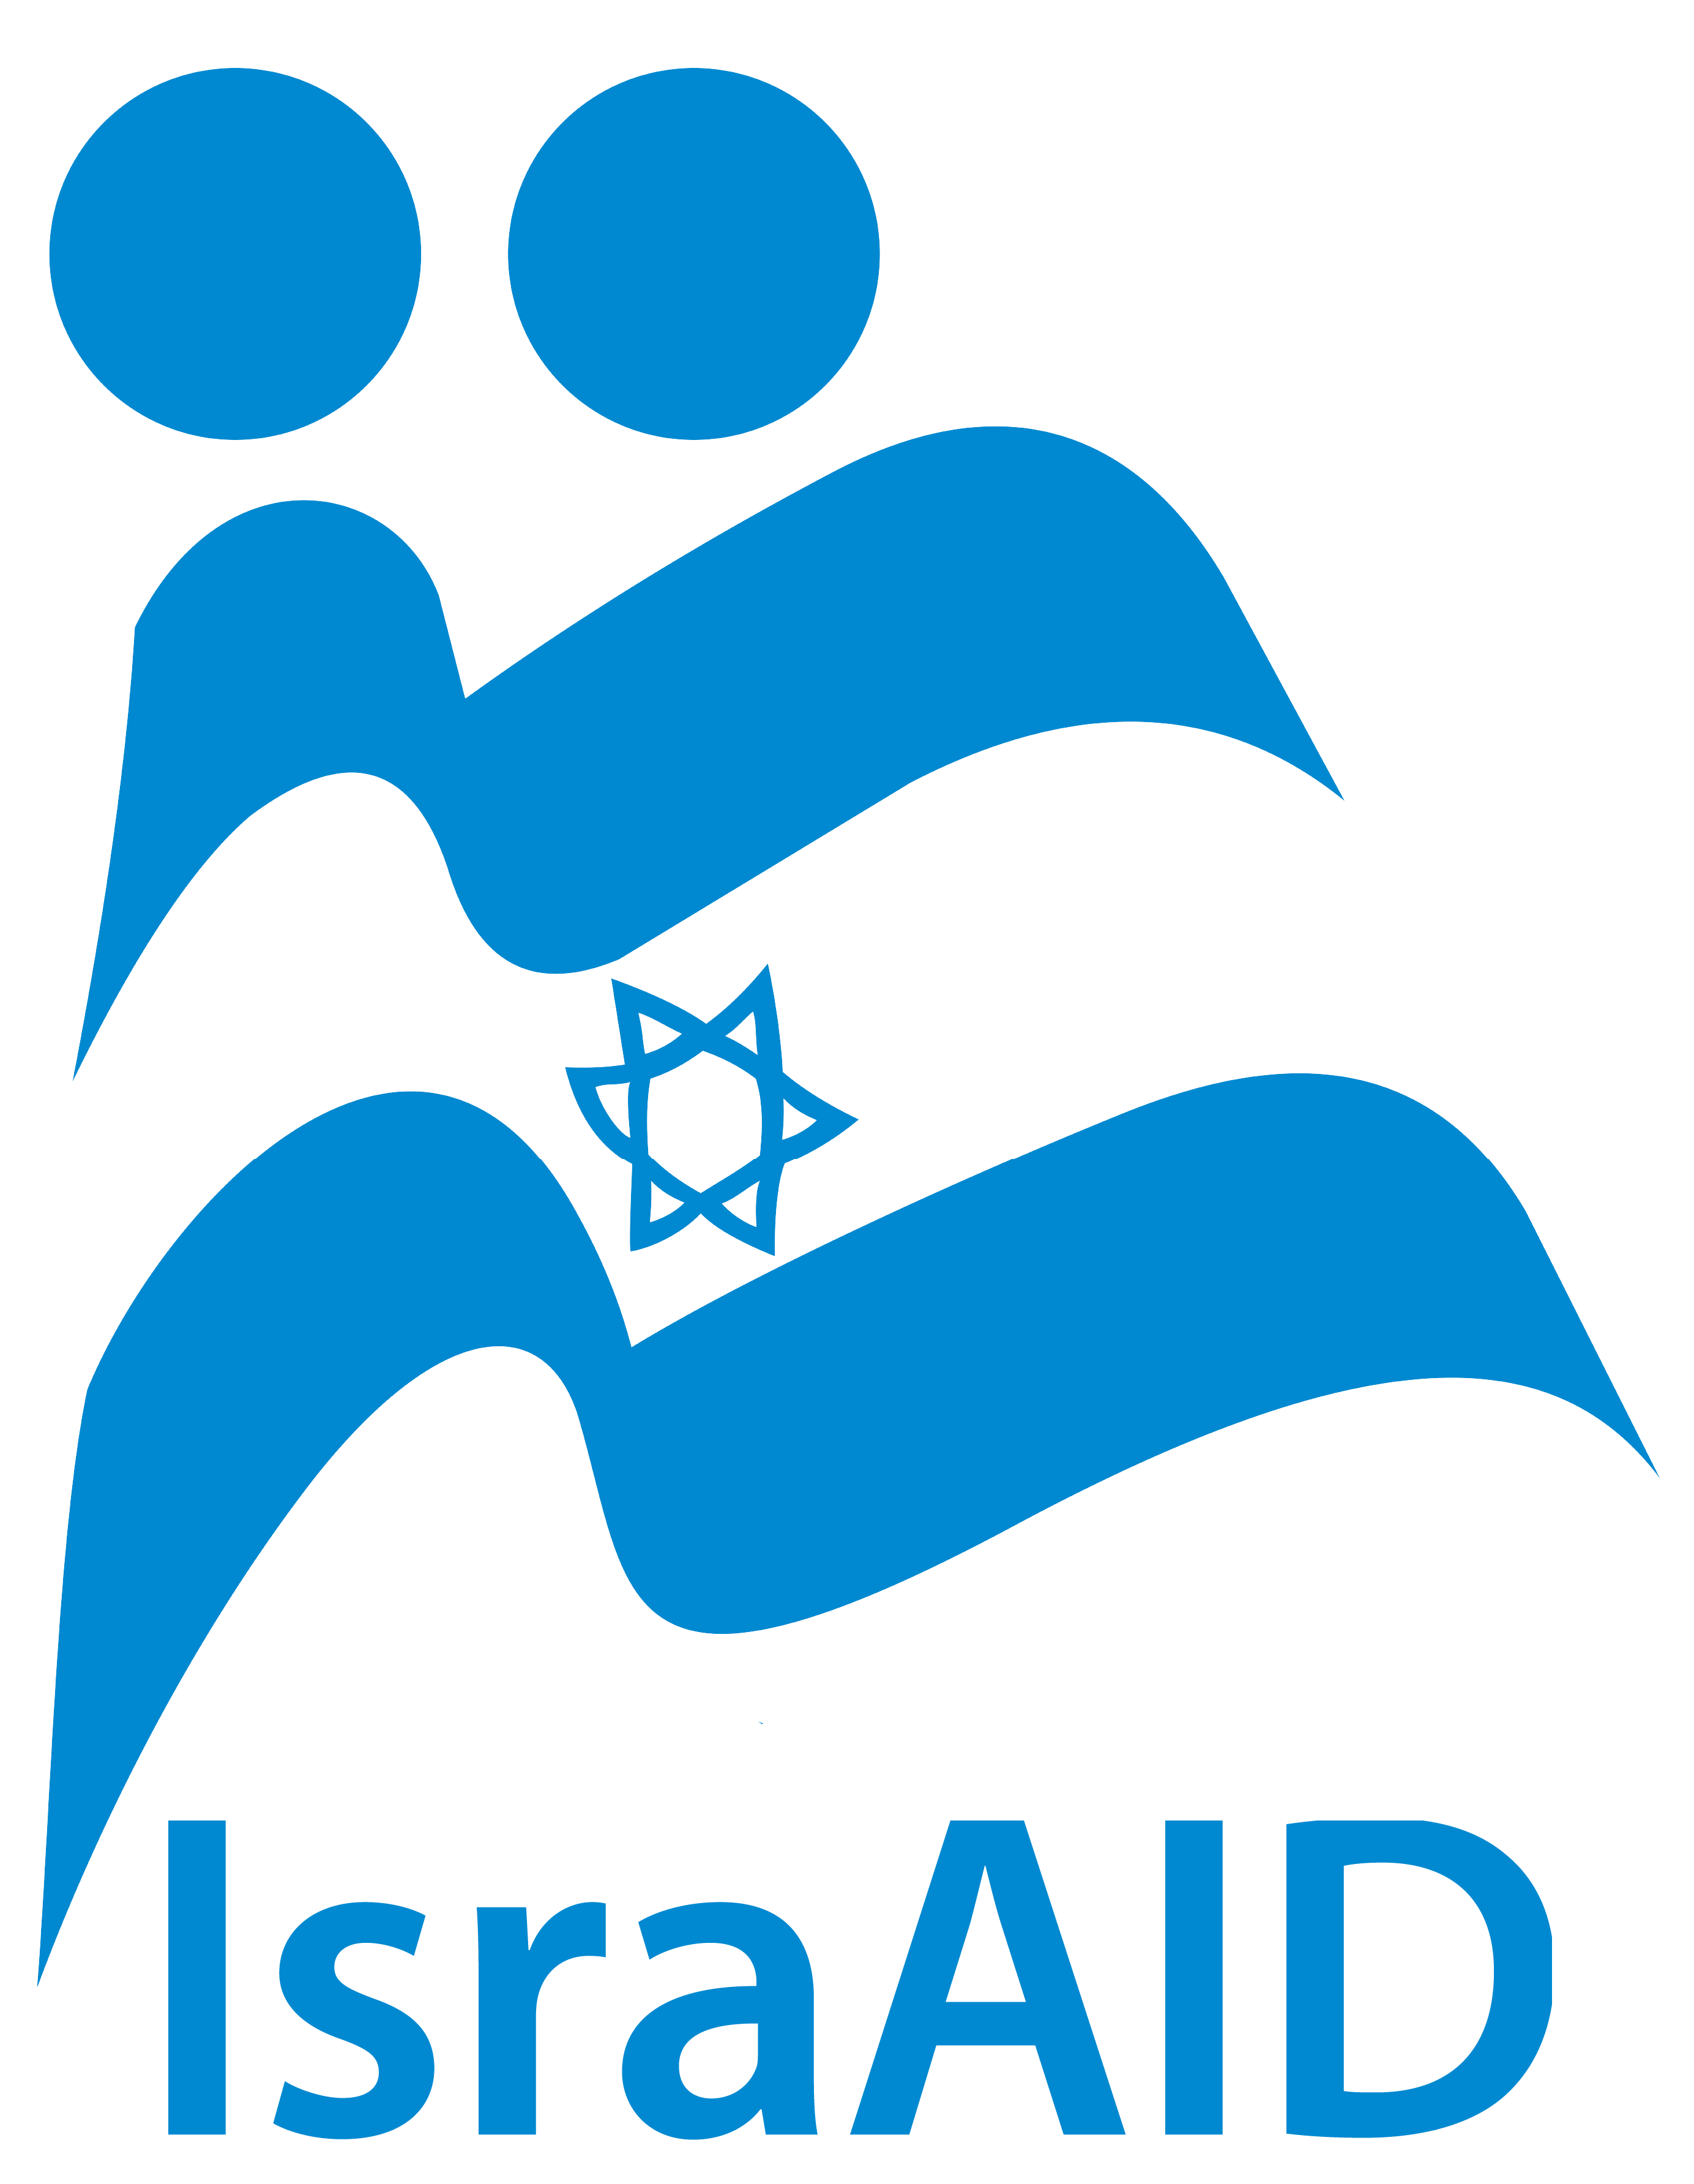 IsraAID logo